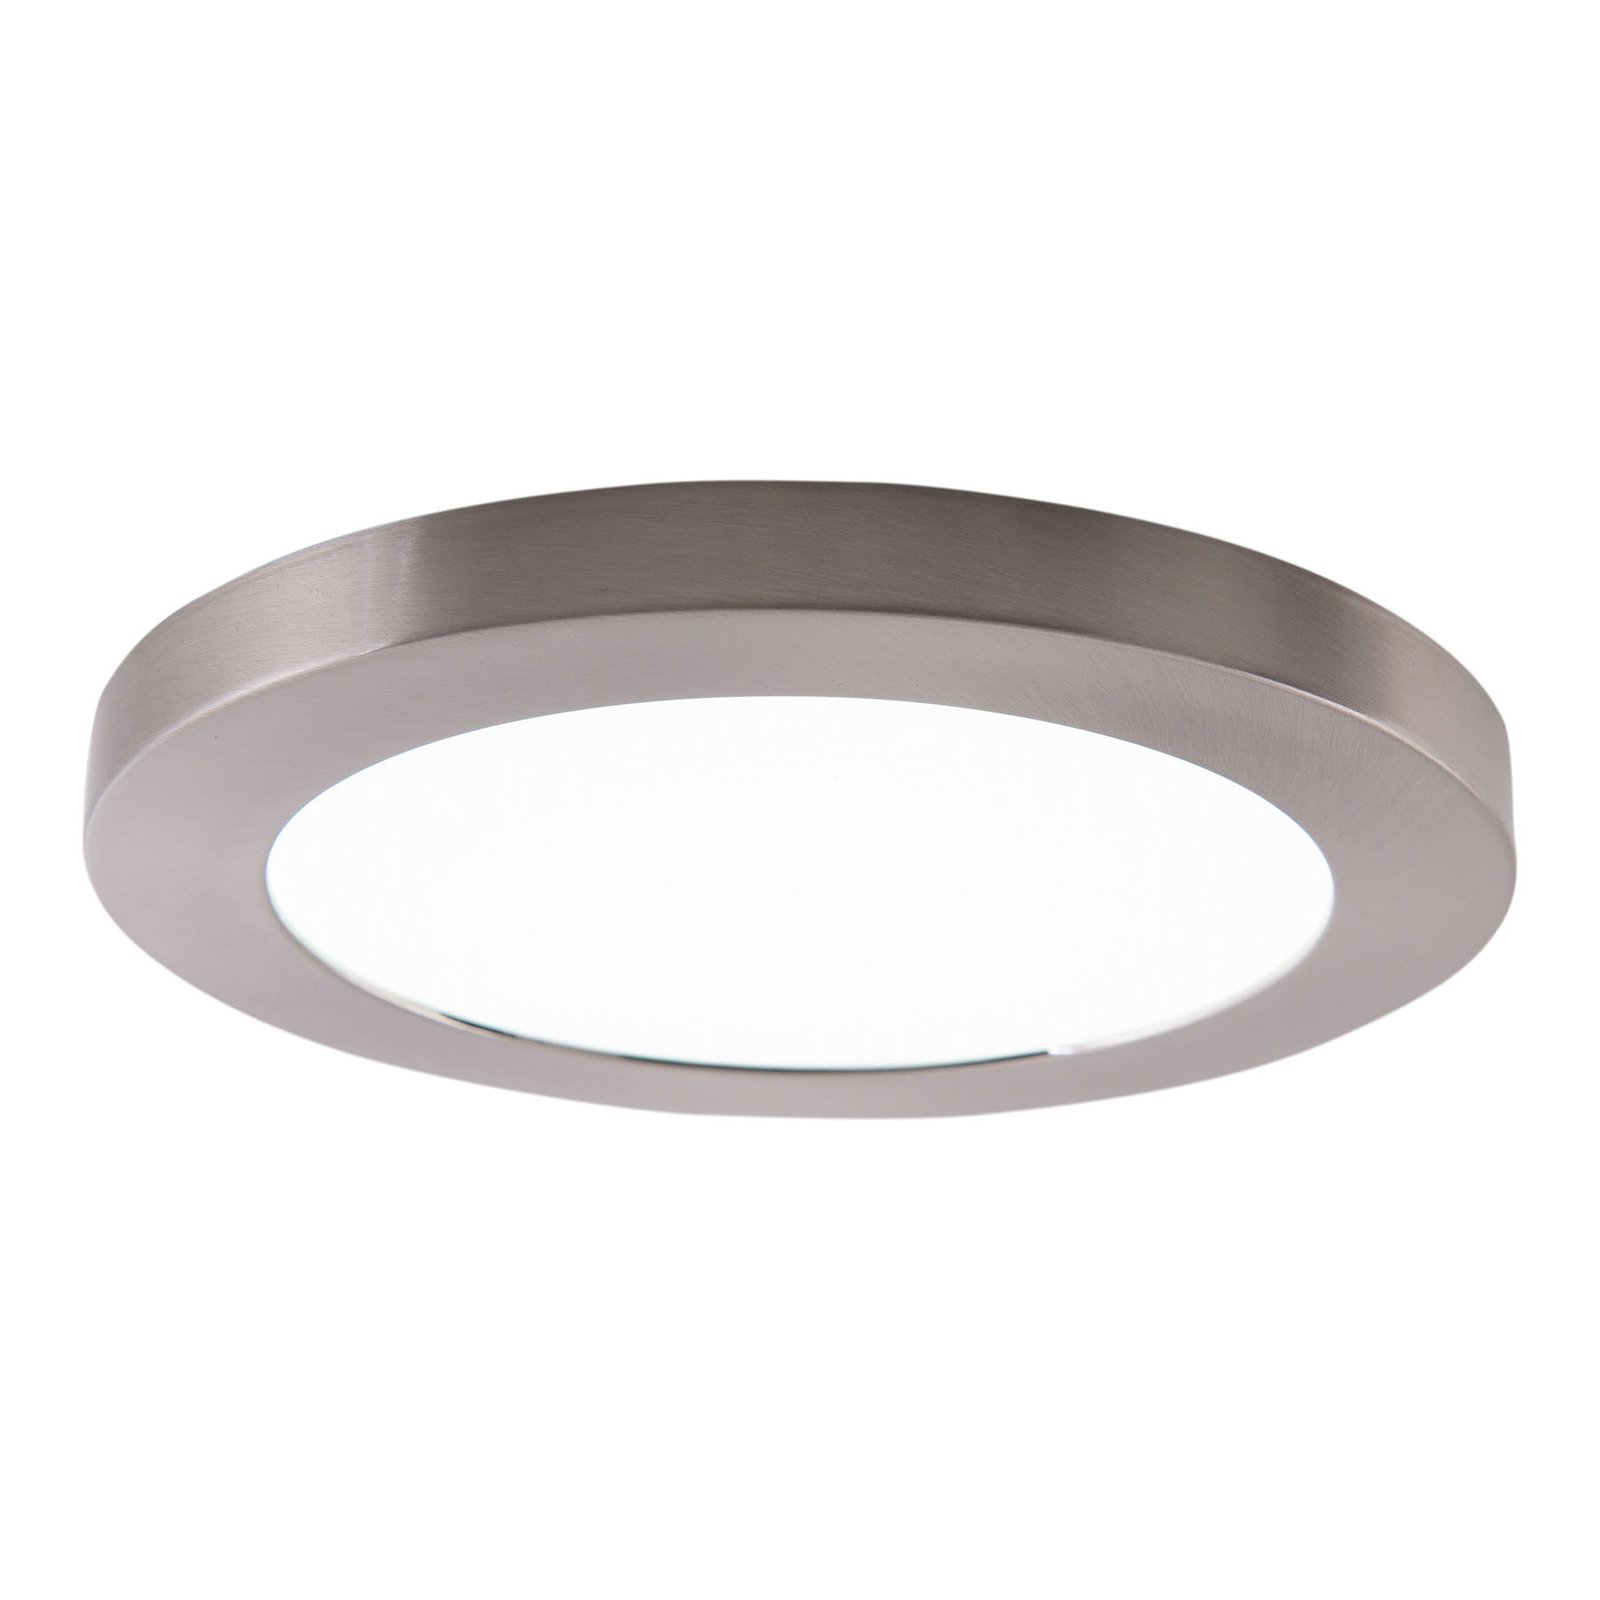 Bonus LED ceiling light, magnetic ring, Ø 22.5 cm